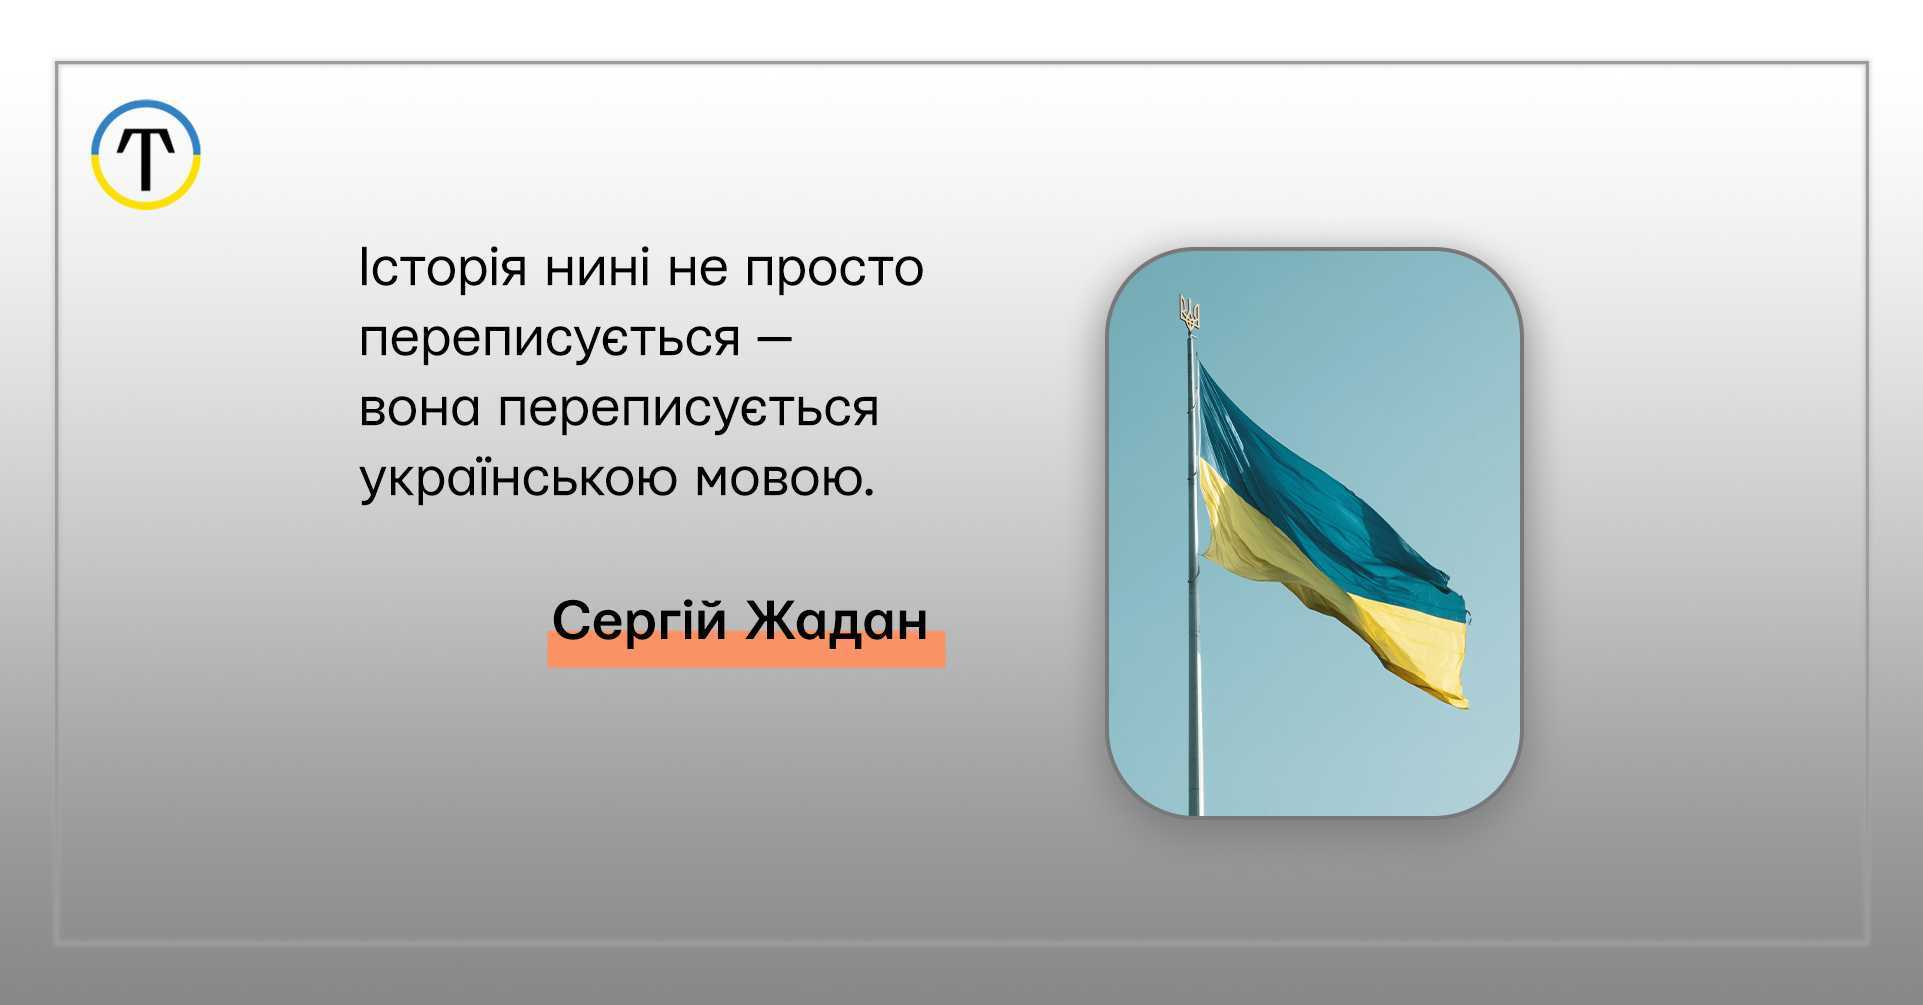 youtube 24.08 - До Дня Незалежності України: 20 ютуб-каналів про історію